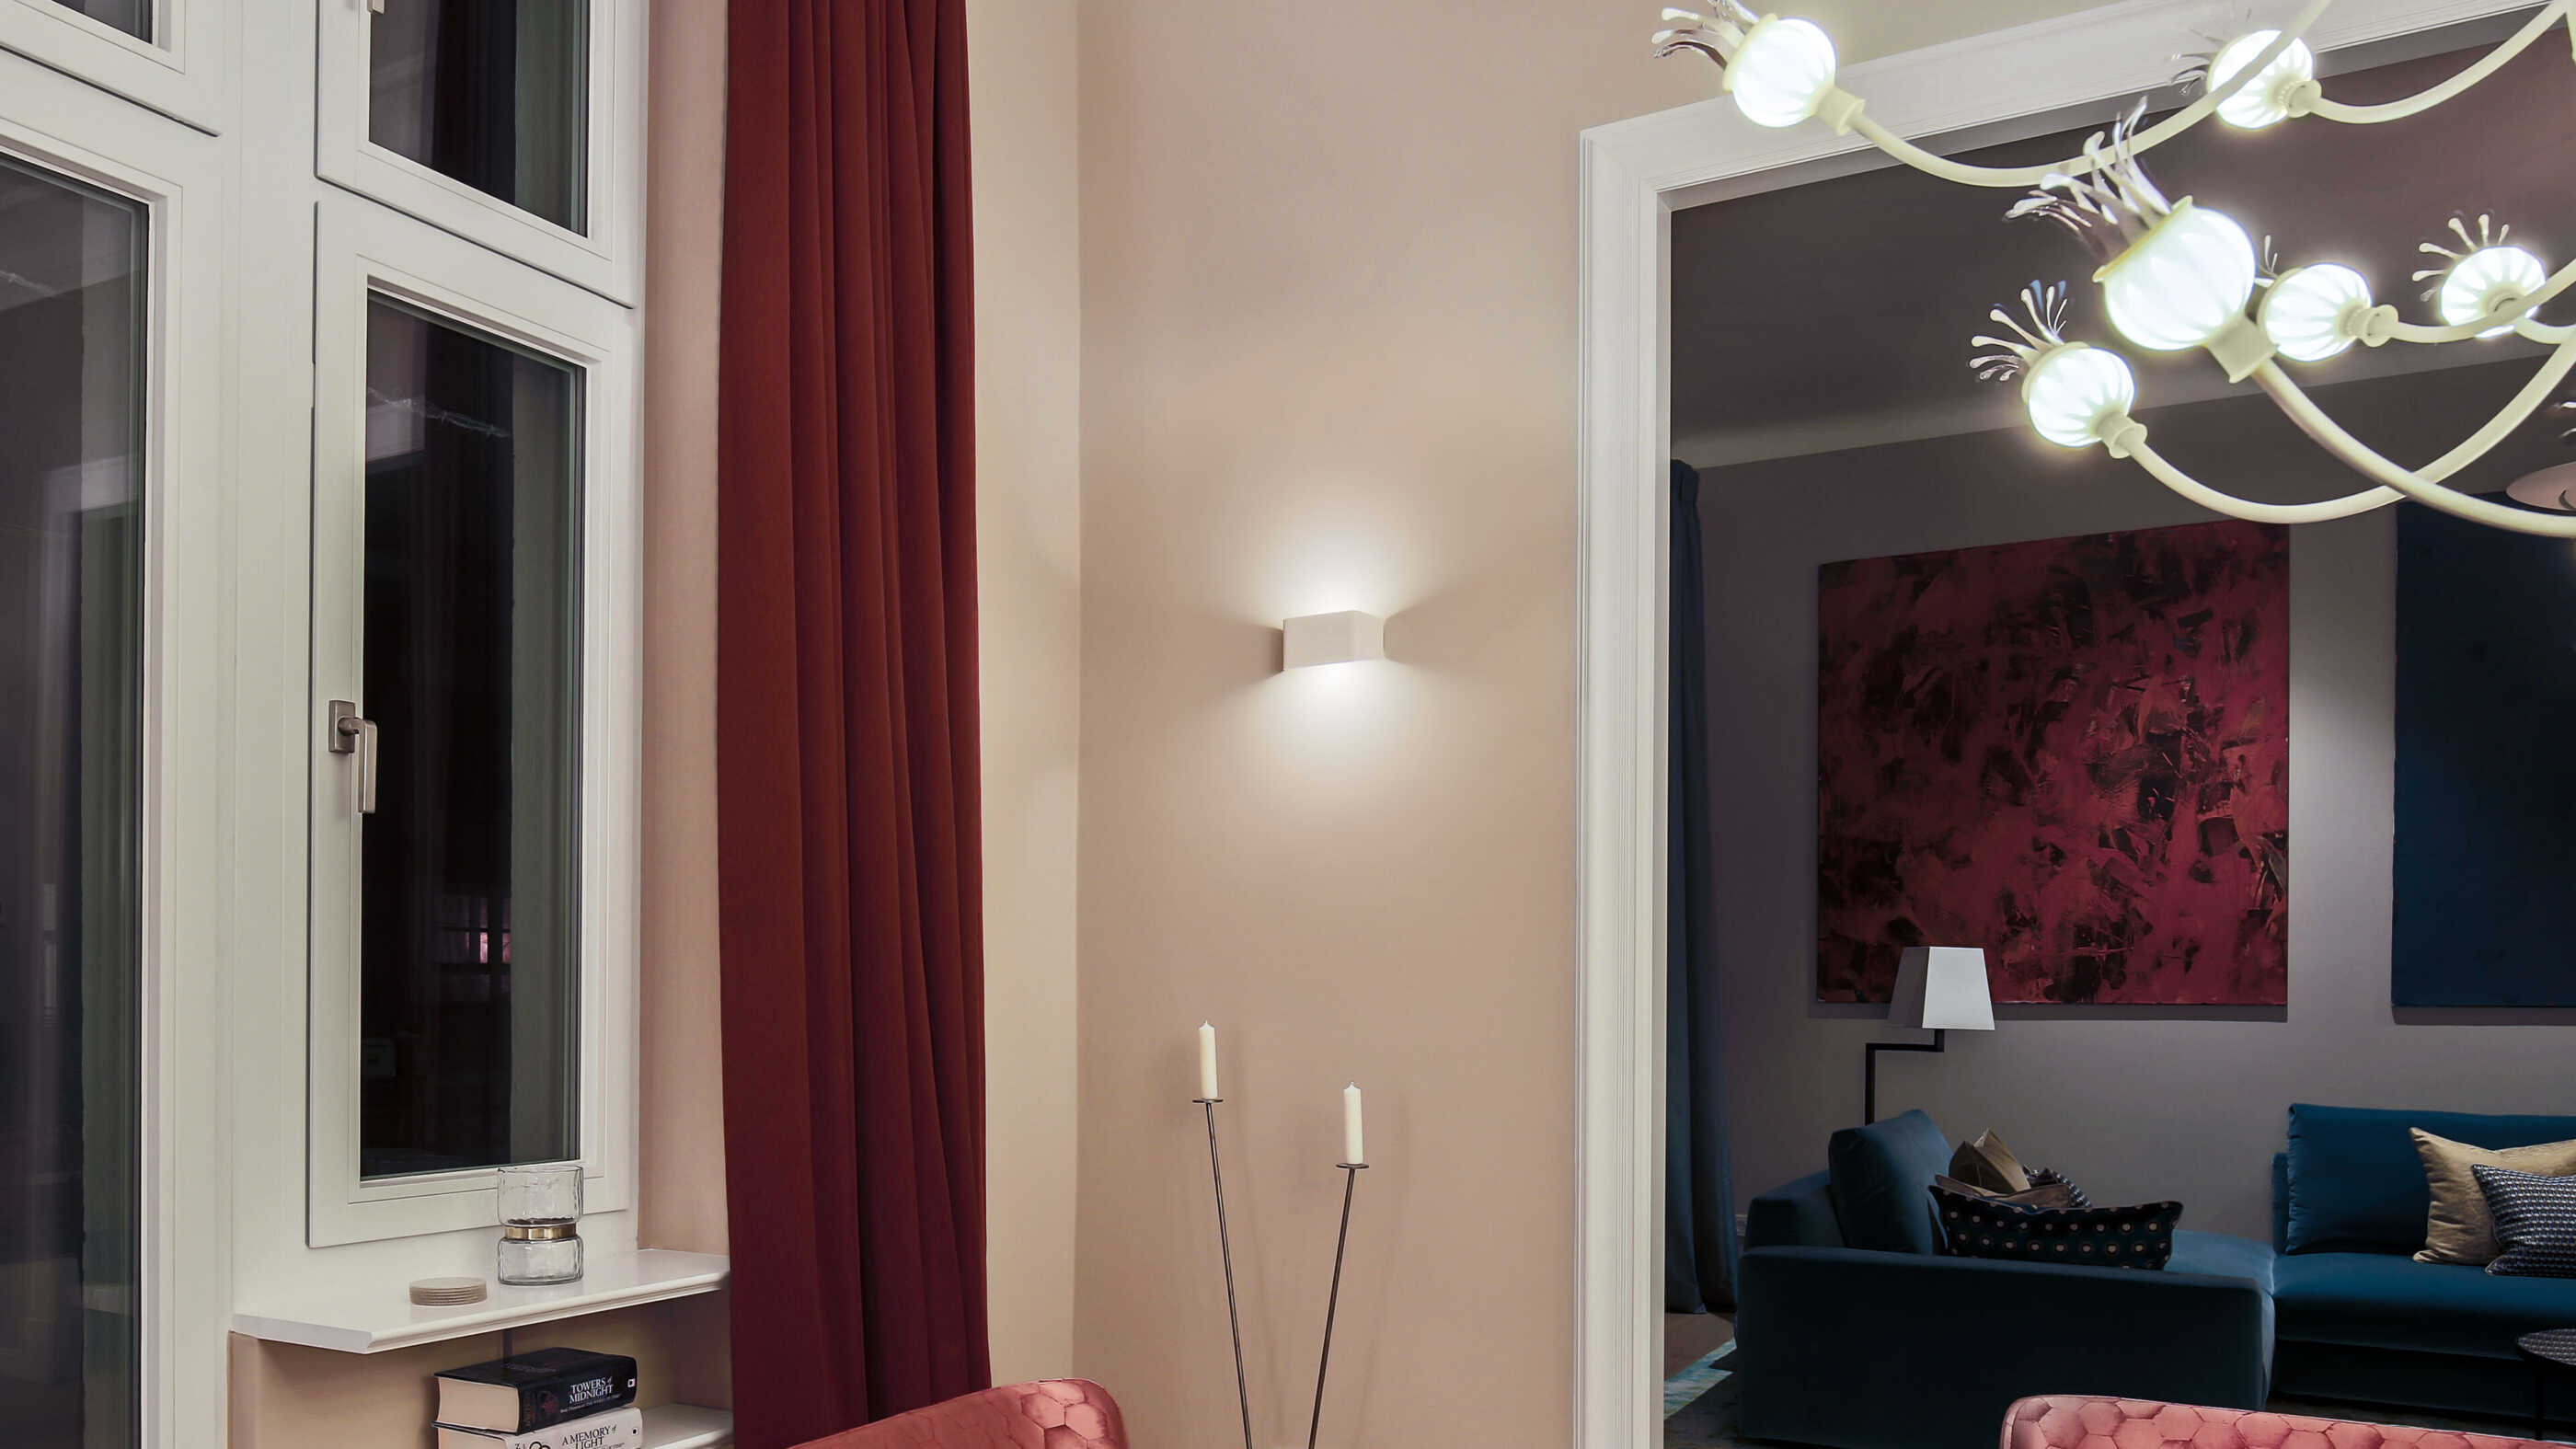 Detailansicht im Esszimmer einer Berliner Altbauwohnung: Eine Wandleuchte neben einem Durchgang setzt einen Lichtakzent, im Hintergrund rechts ist das Wohnzimmer zu sehen. (Foto: Prediger Lichtberater)